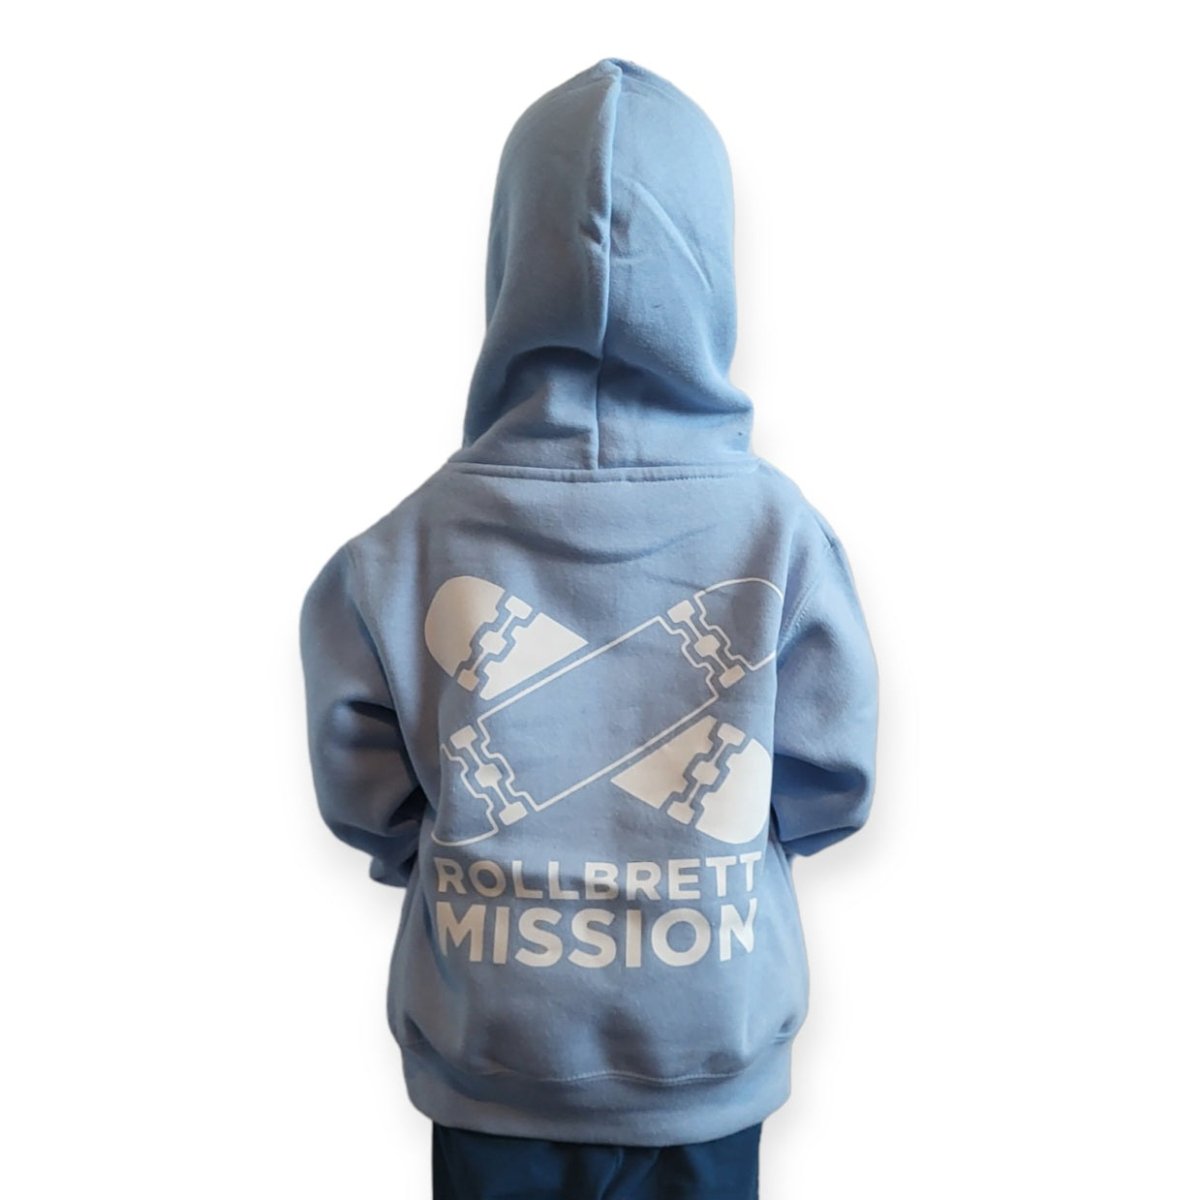 Rollbrett Mission Kids Hoodie Old School sky blue - Shirts & Tops - Rollbrett Mission